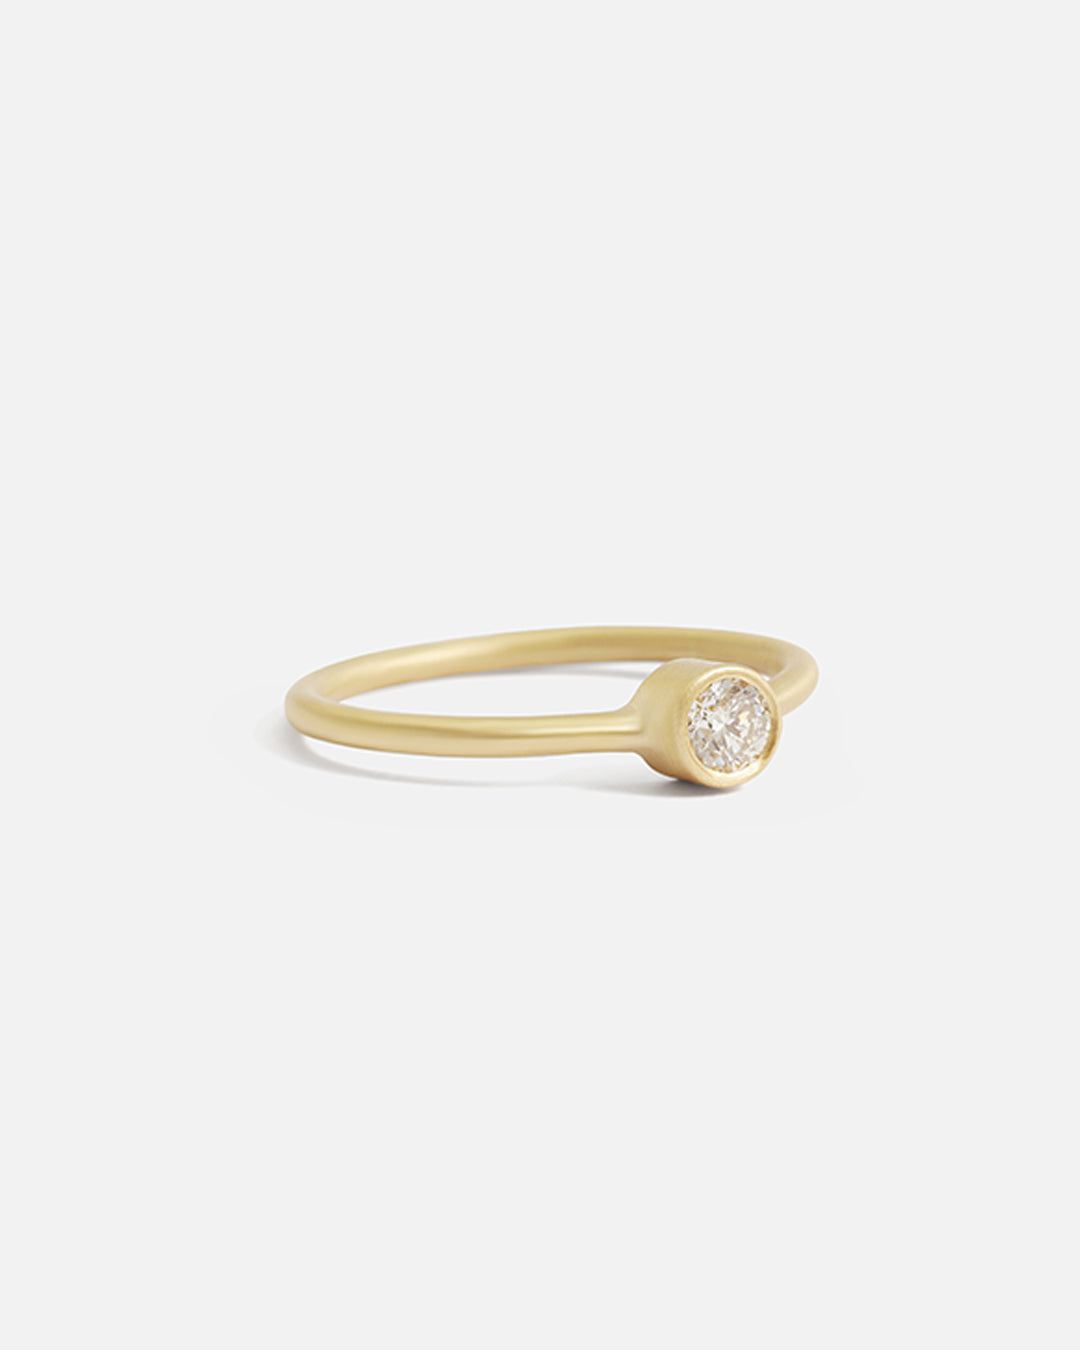 Single Diamond / Ring By Tricia Kirkland